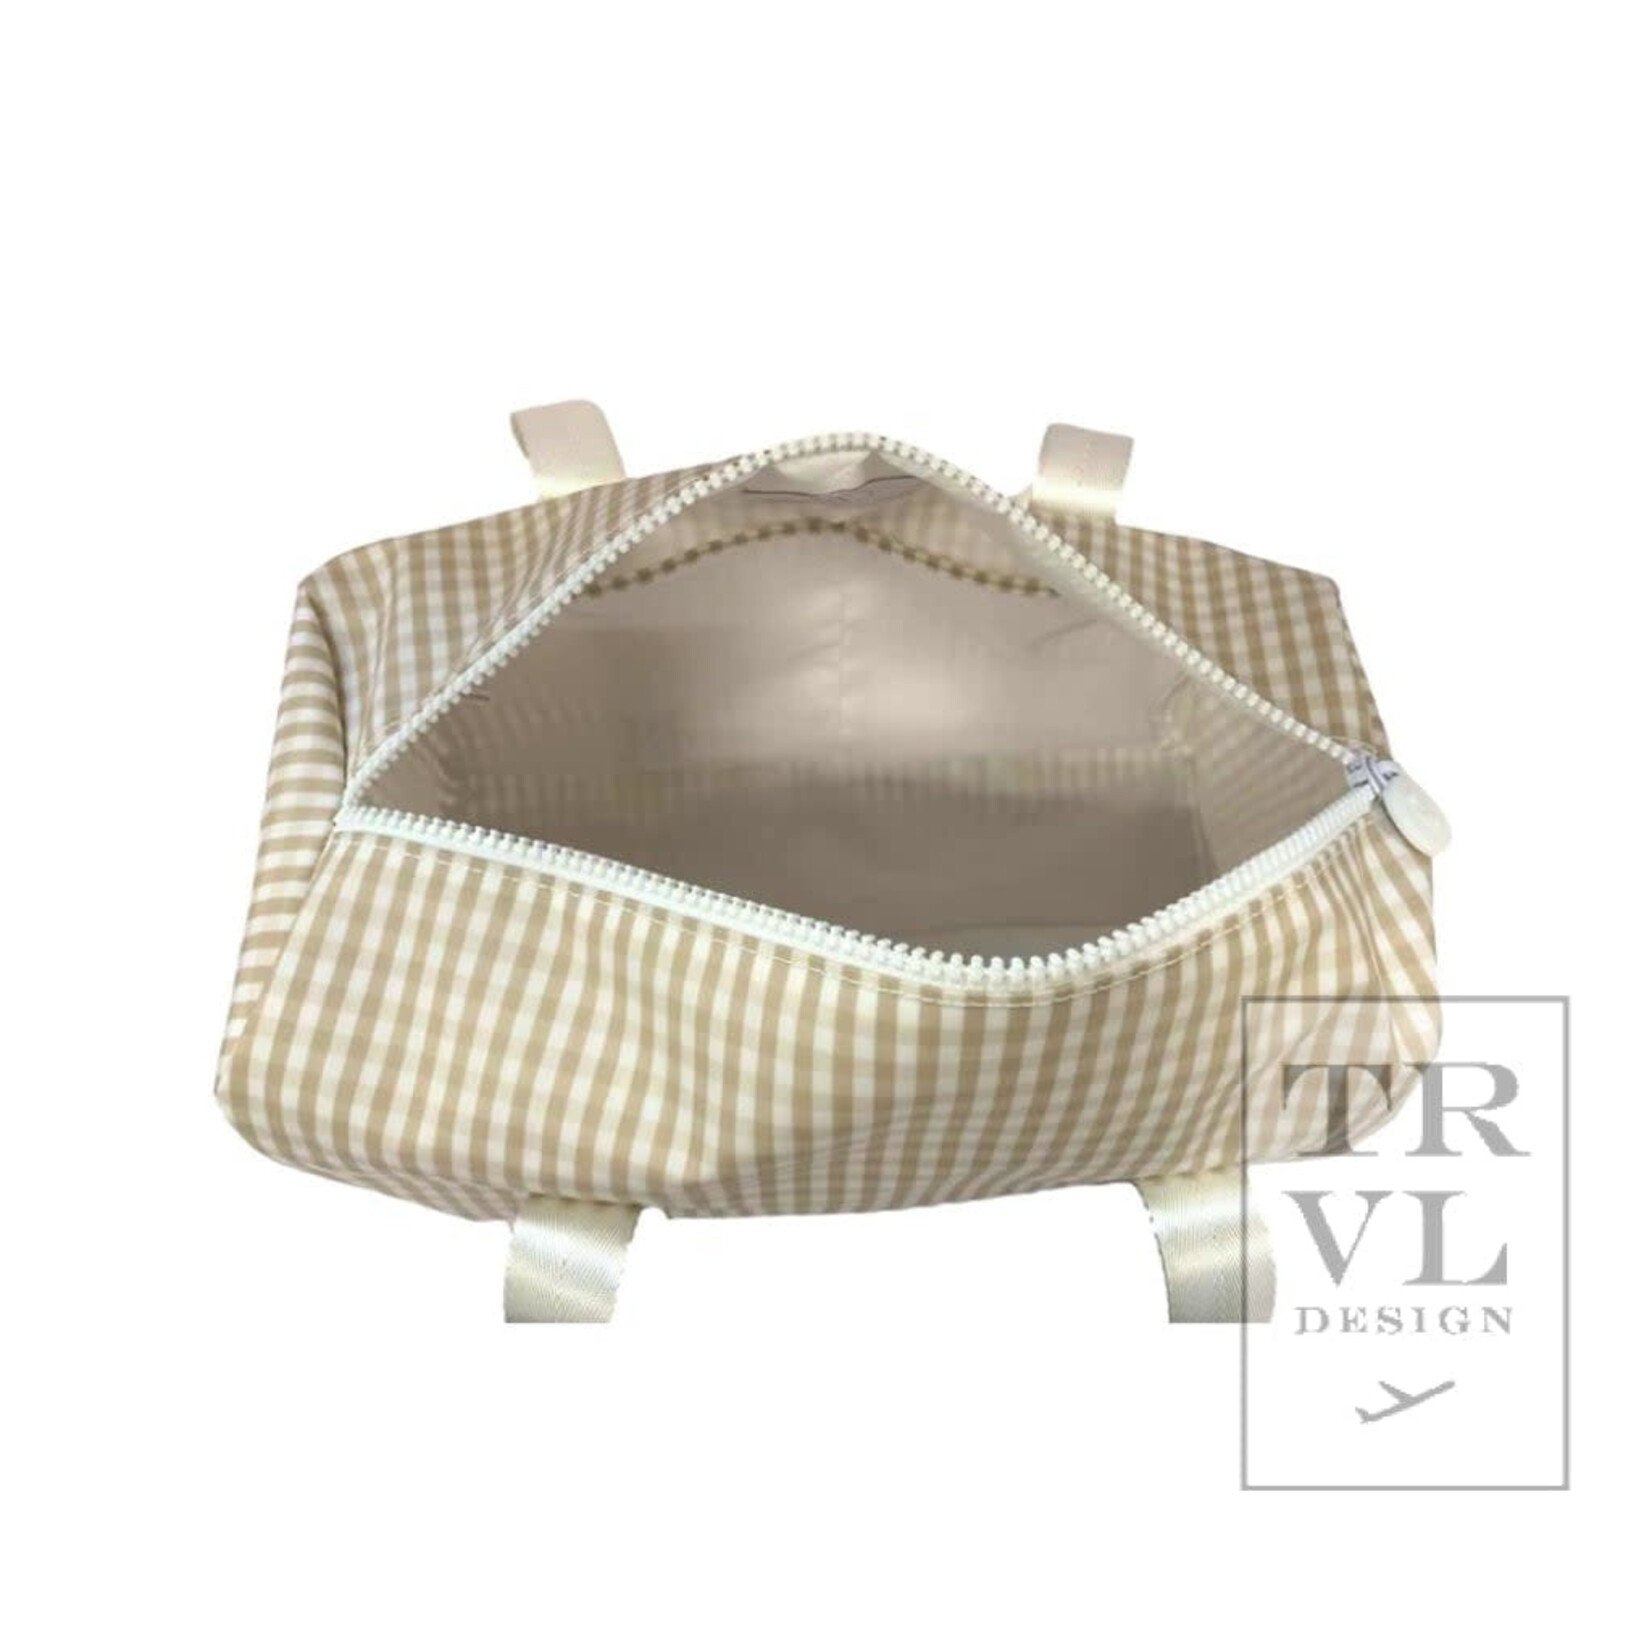 TRVL Design Mini Packer - Gingham Khaki